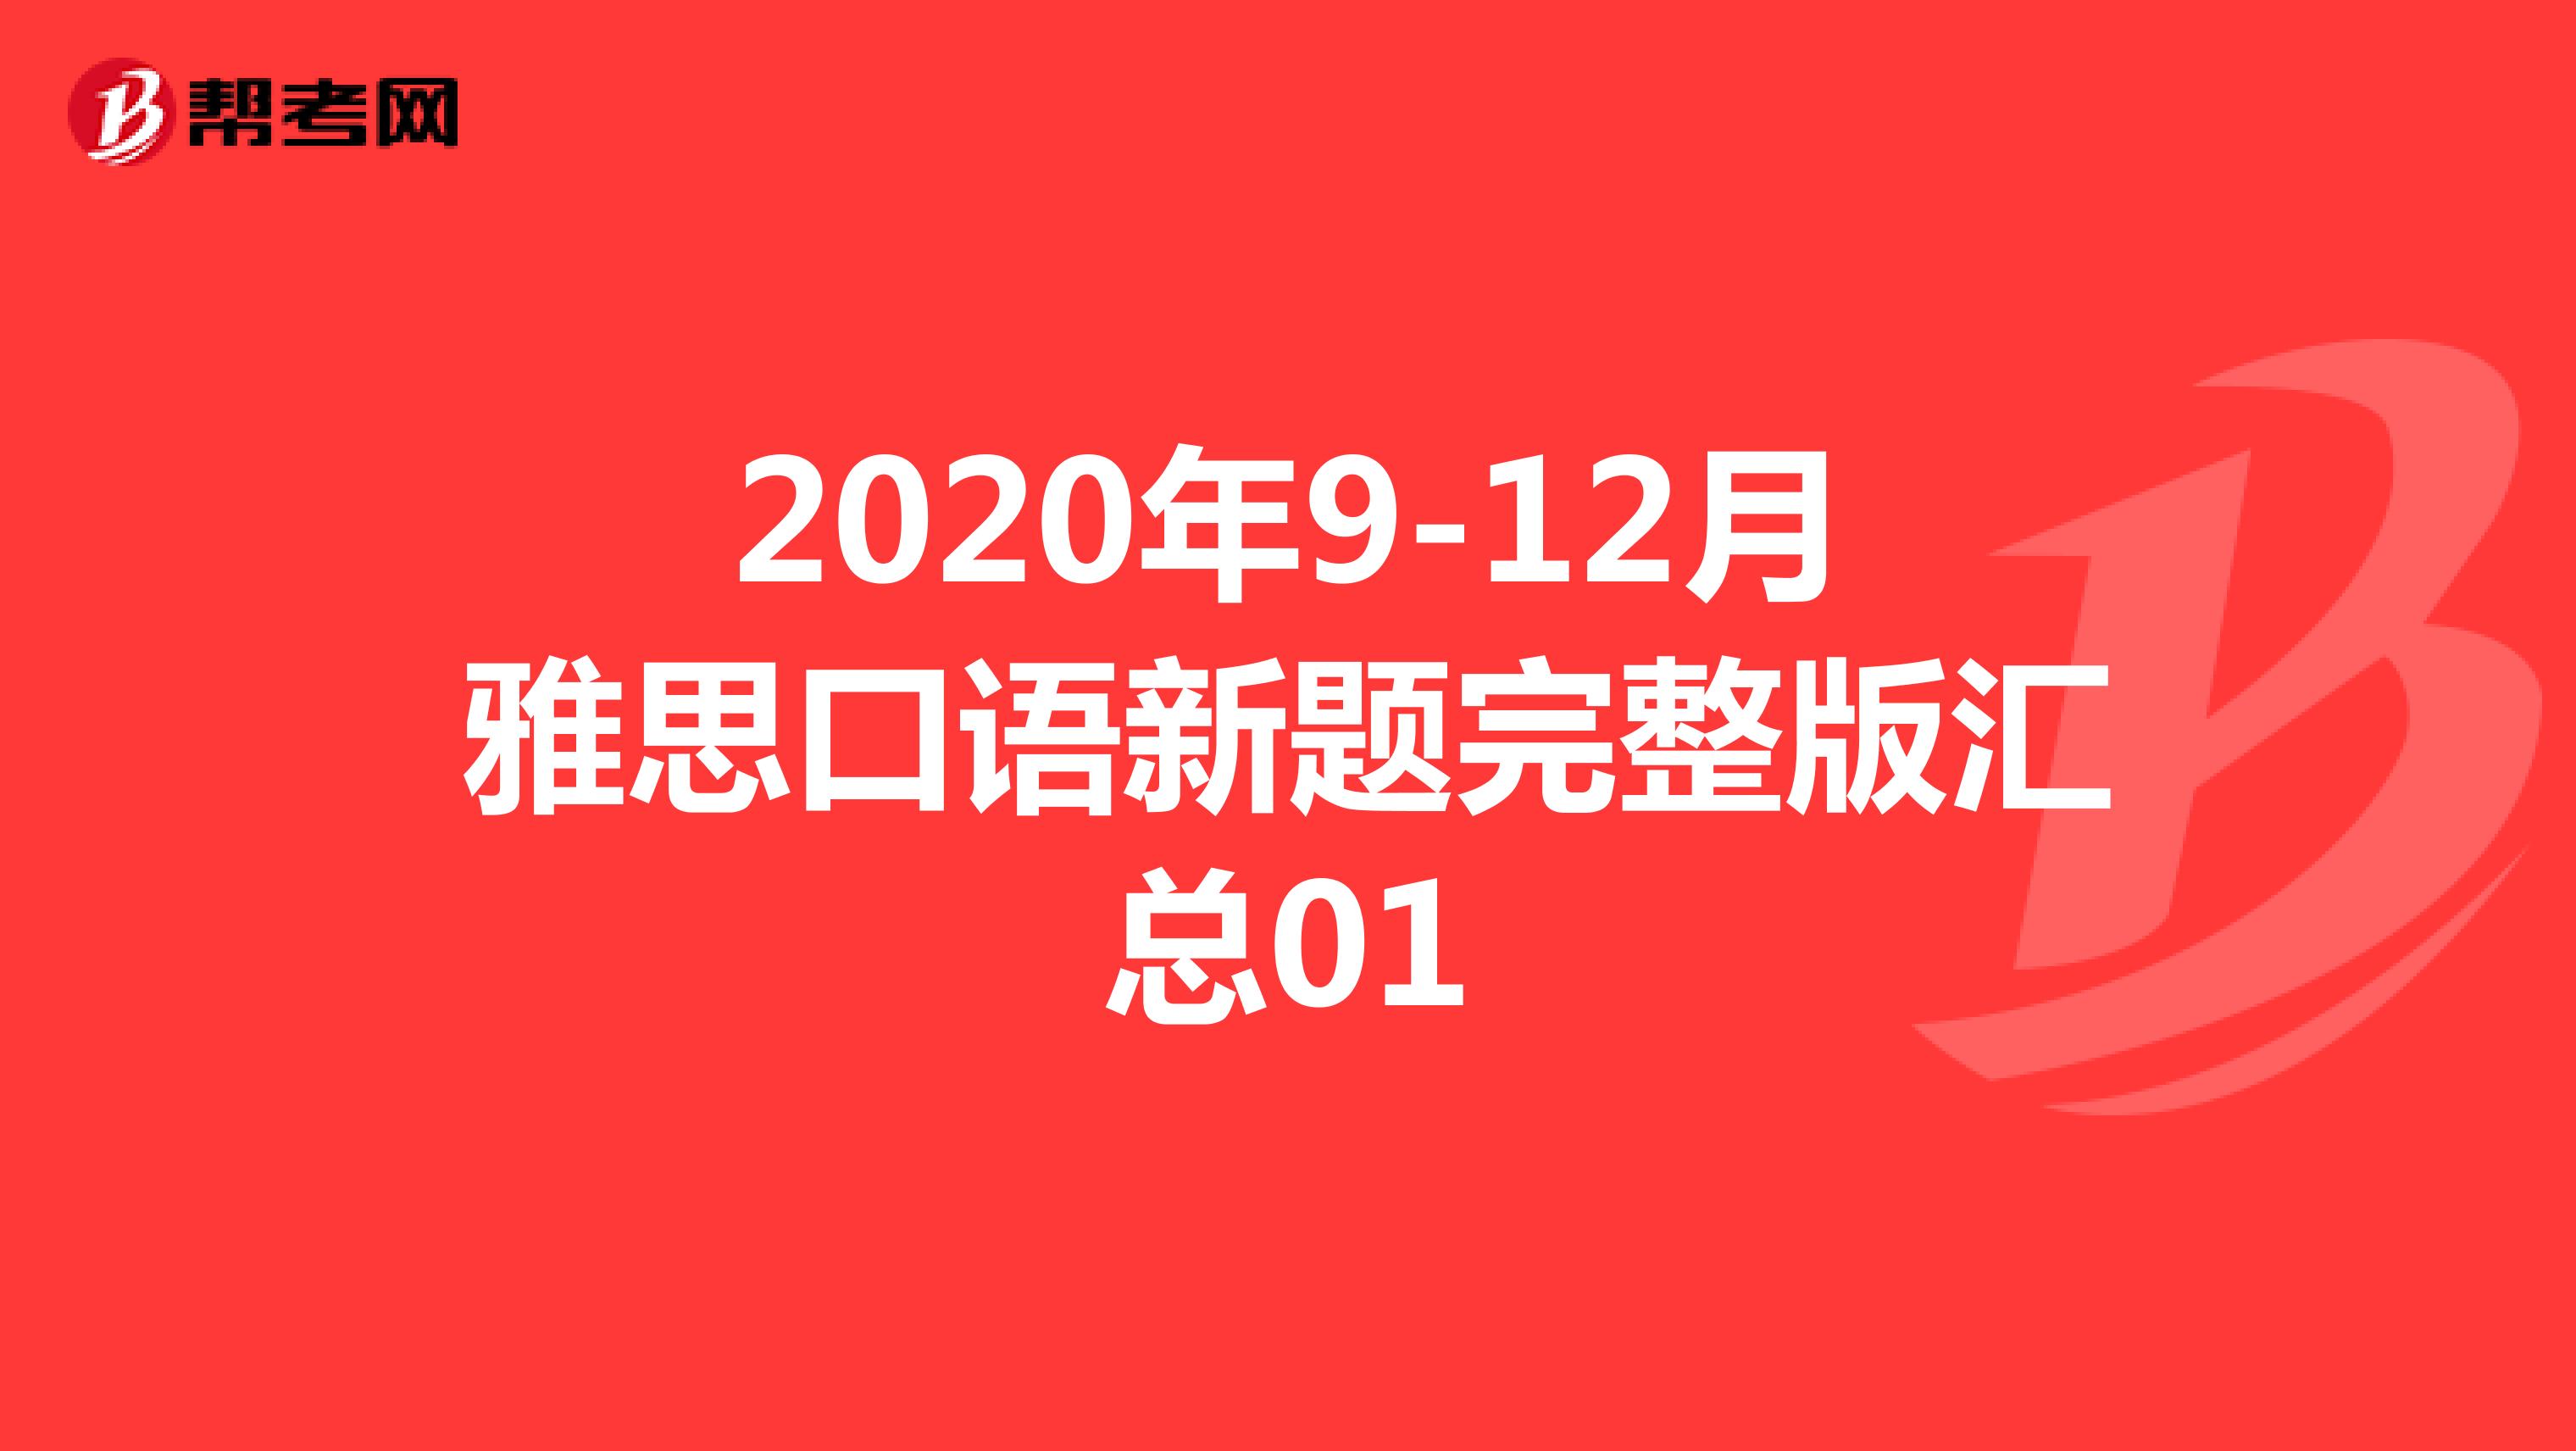 2020年9-12月雅思口语新题完整版汇总01